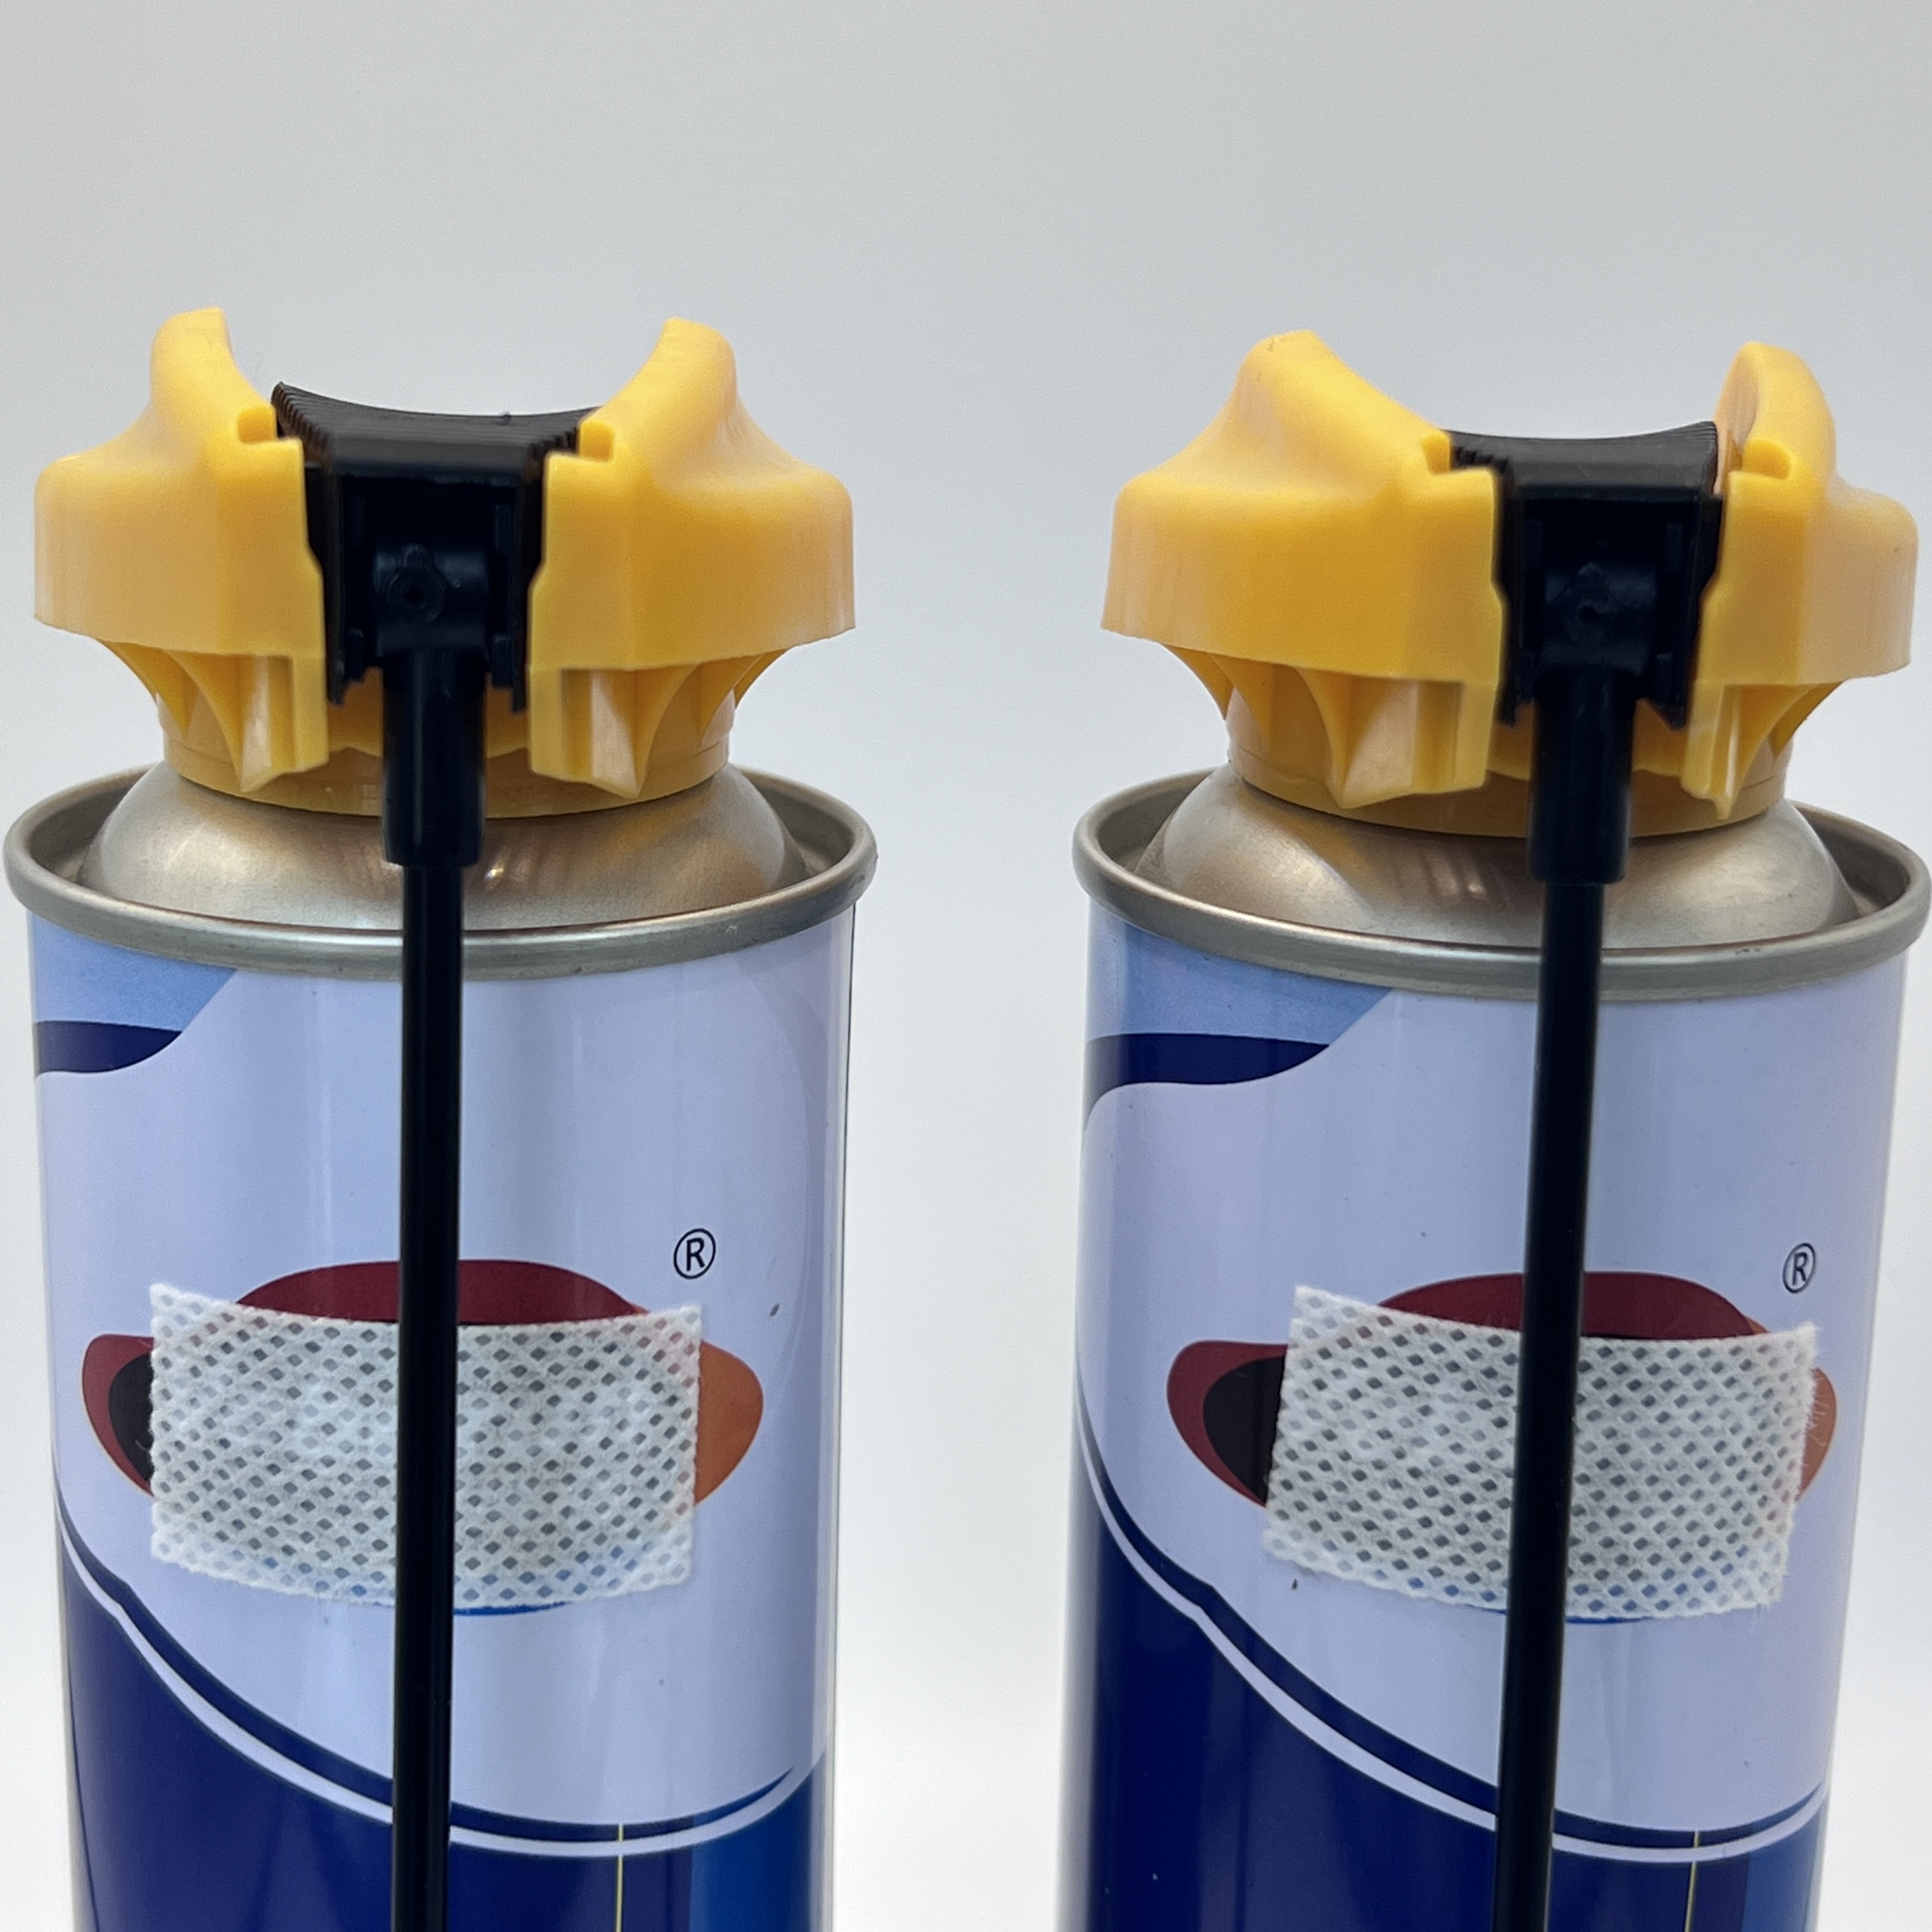 Všestranný nástroj pro doplňování butanových plynových kazet – řešení pro snadné doplňování pro přenosné sporáky a zapalovače